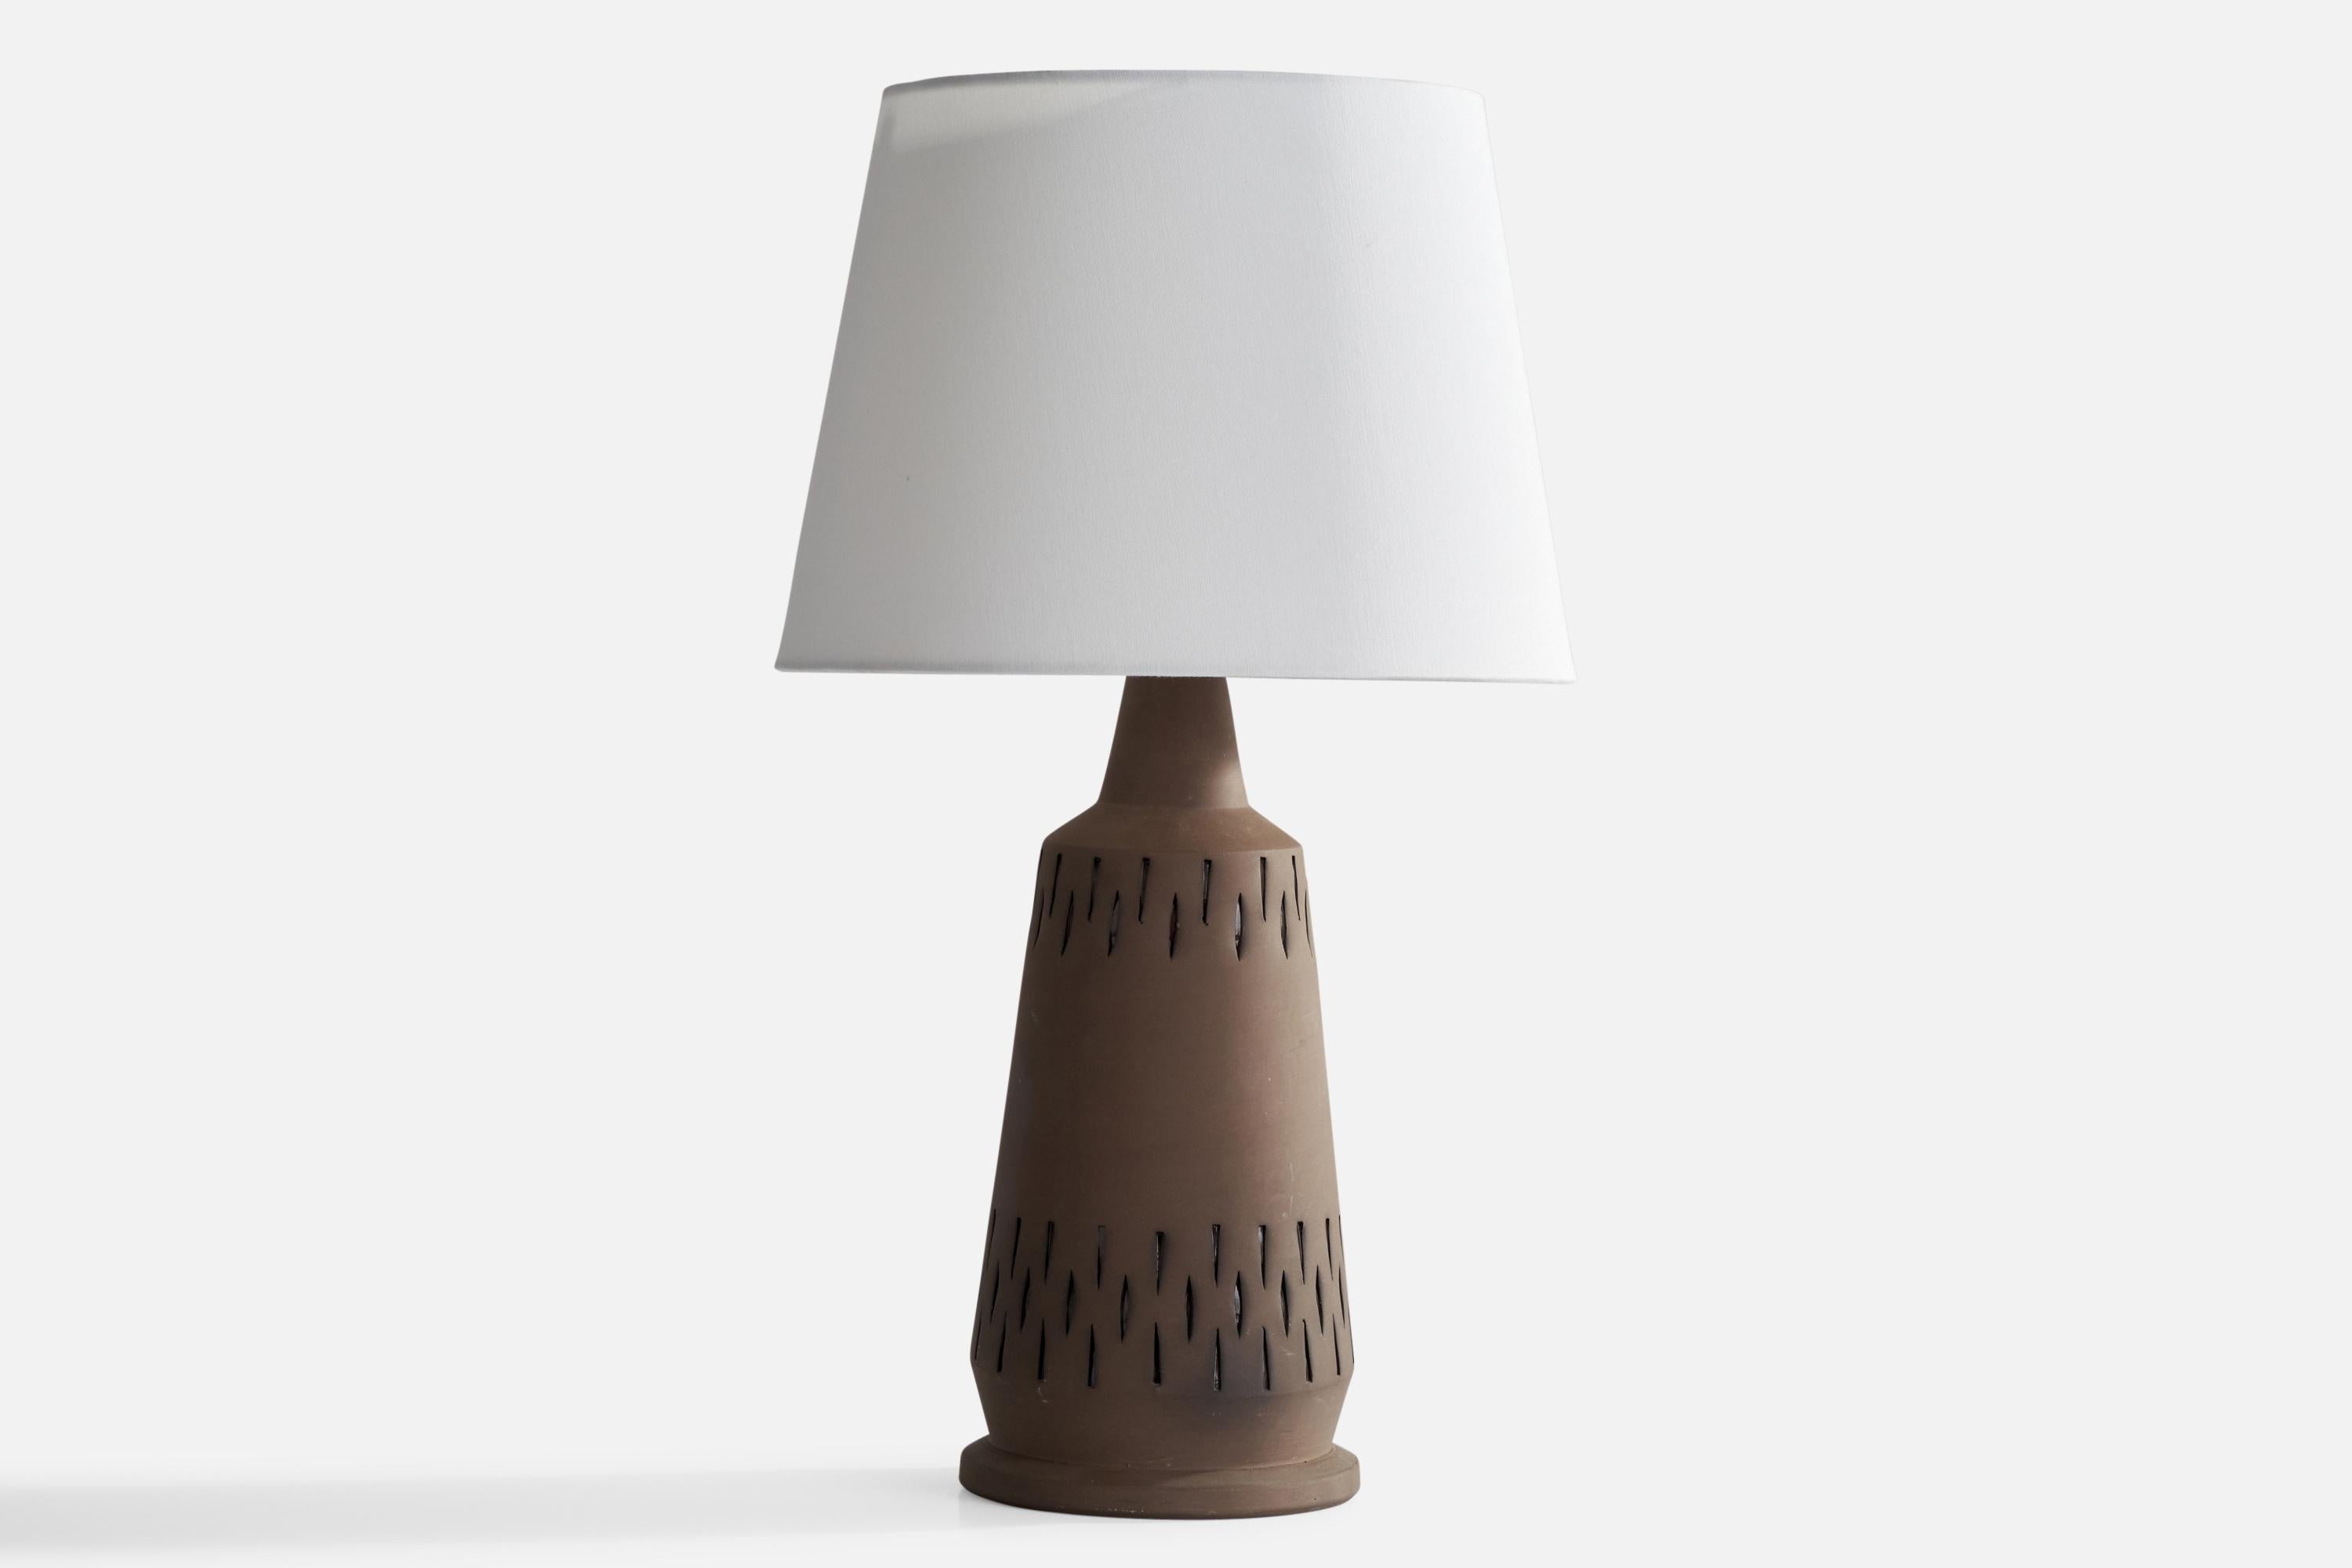 Lampe de table en céramique brune non émaillée, conçue et produite par Nila Keramik, Suède, années 1970.

Dimensions de la lampe (pouces) : 16